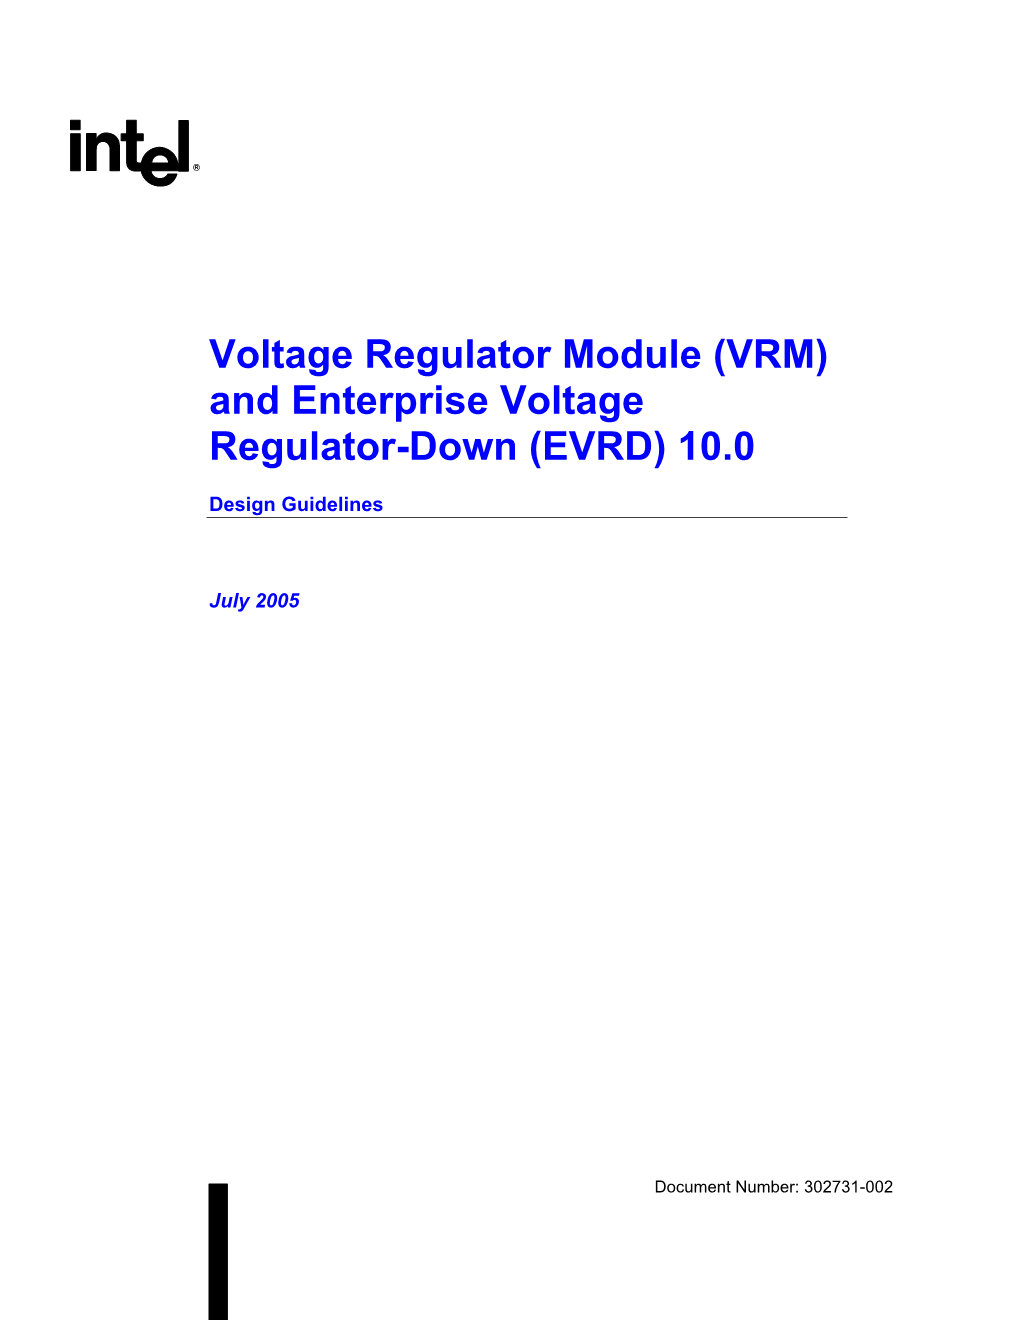 (VRM) and Enterprise Voltage Regulator-Down (EVRD) 10.0